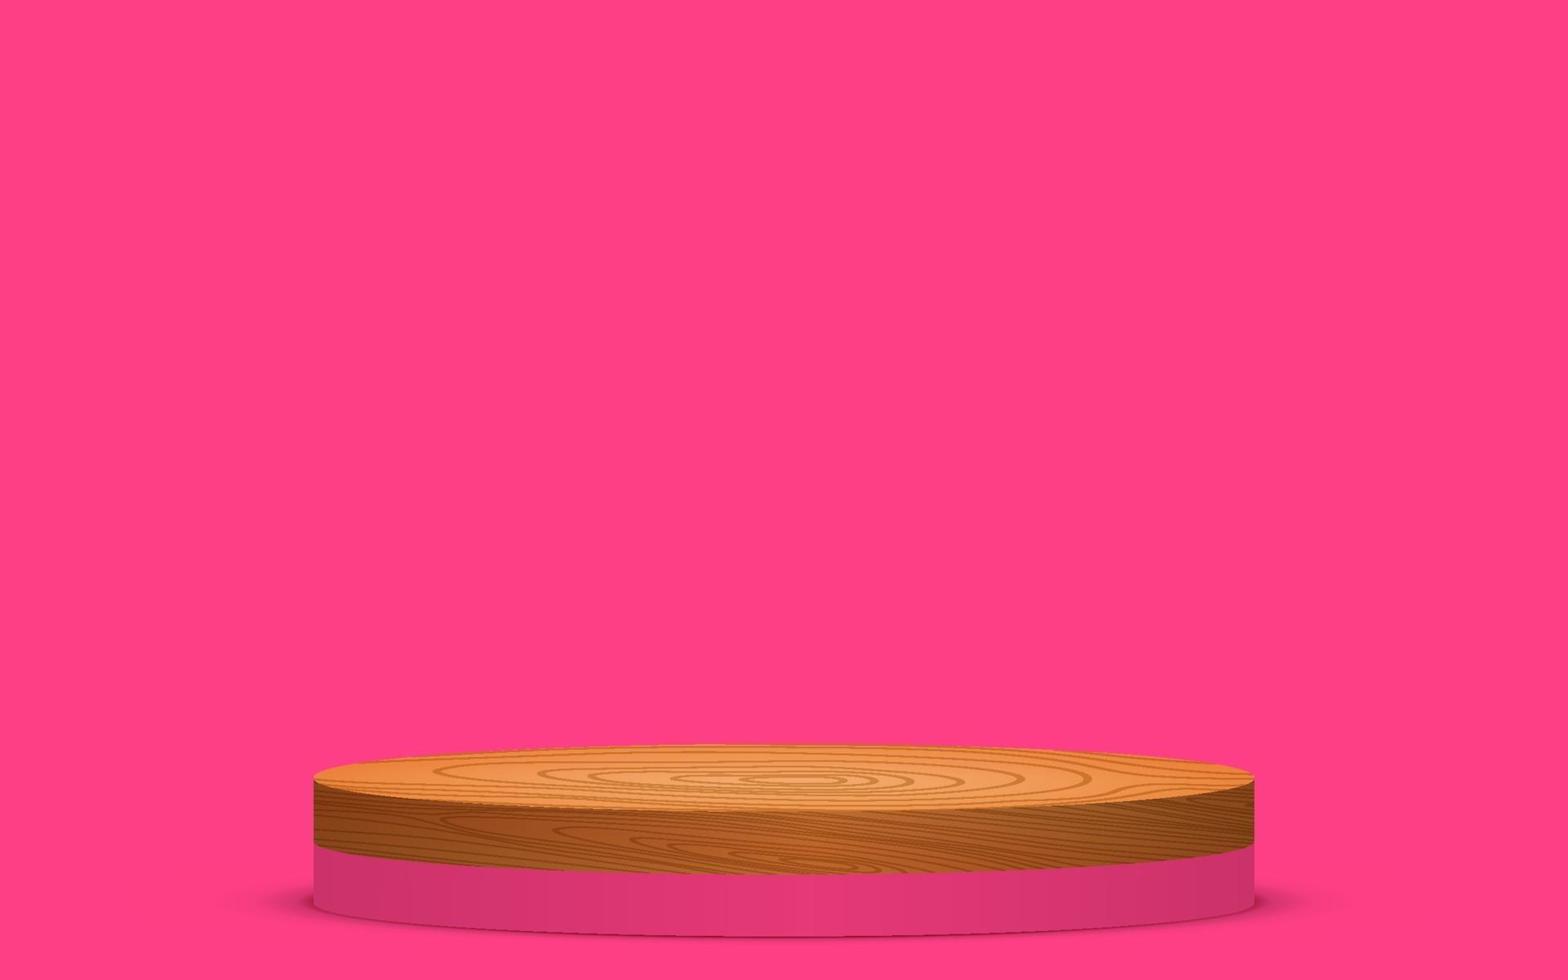 träpallen på den rosa pallen i det rosa rummet vektor